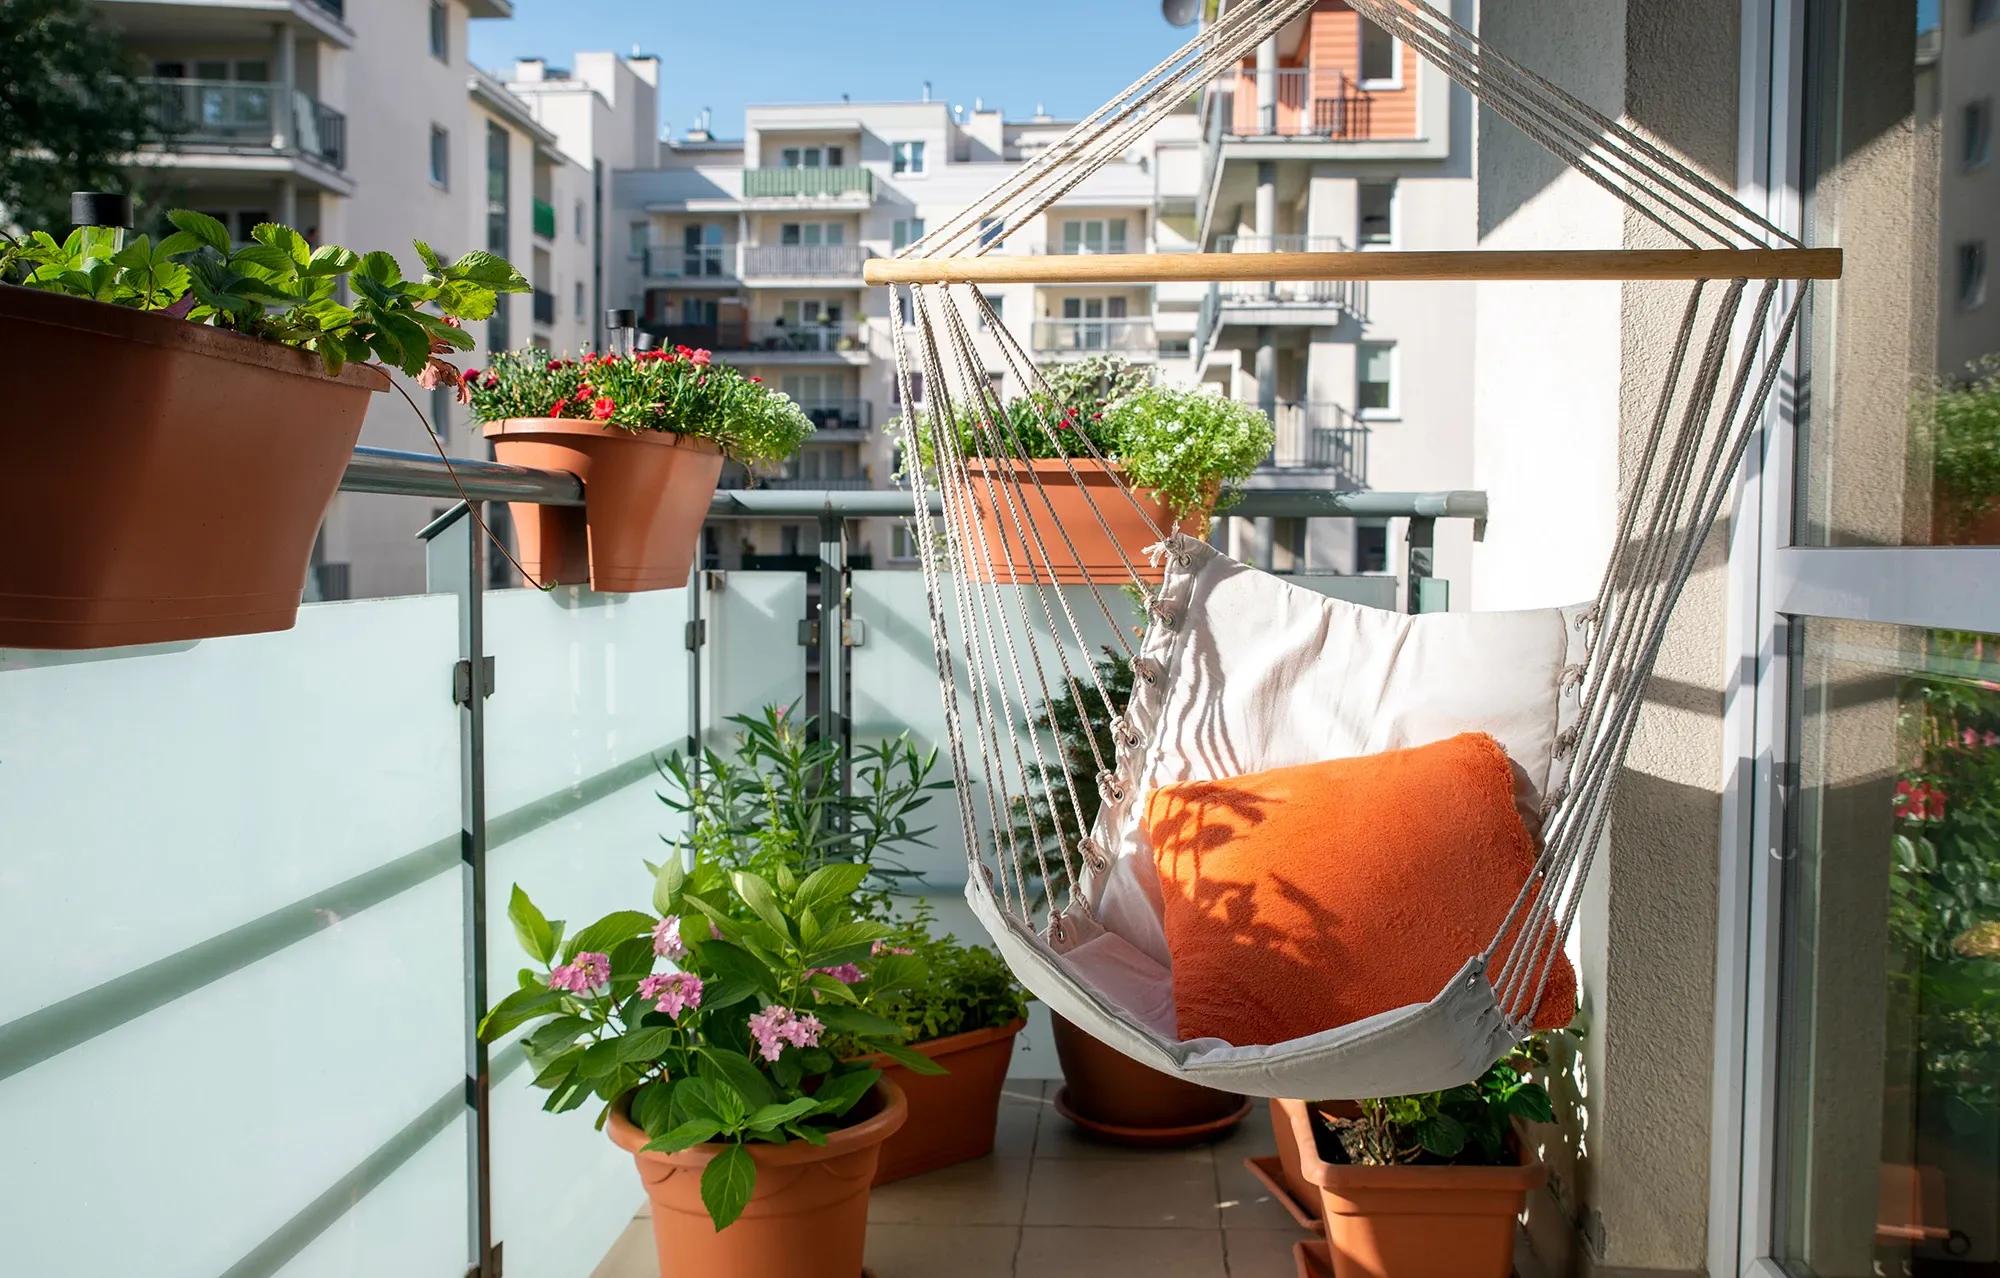 Somrig balkong med stilfulla växter och en avkopplande hängstol - Uppgradera din balkong med professionell renovering, inglasning och andra underhållstjänster